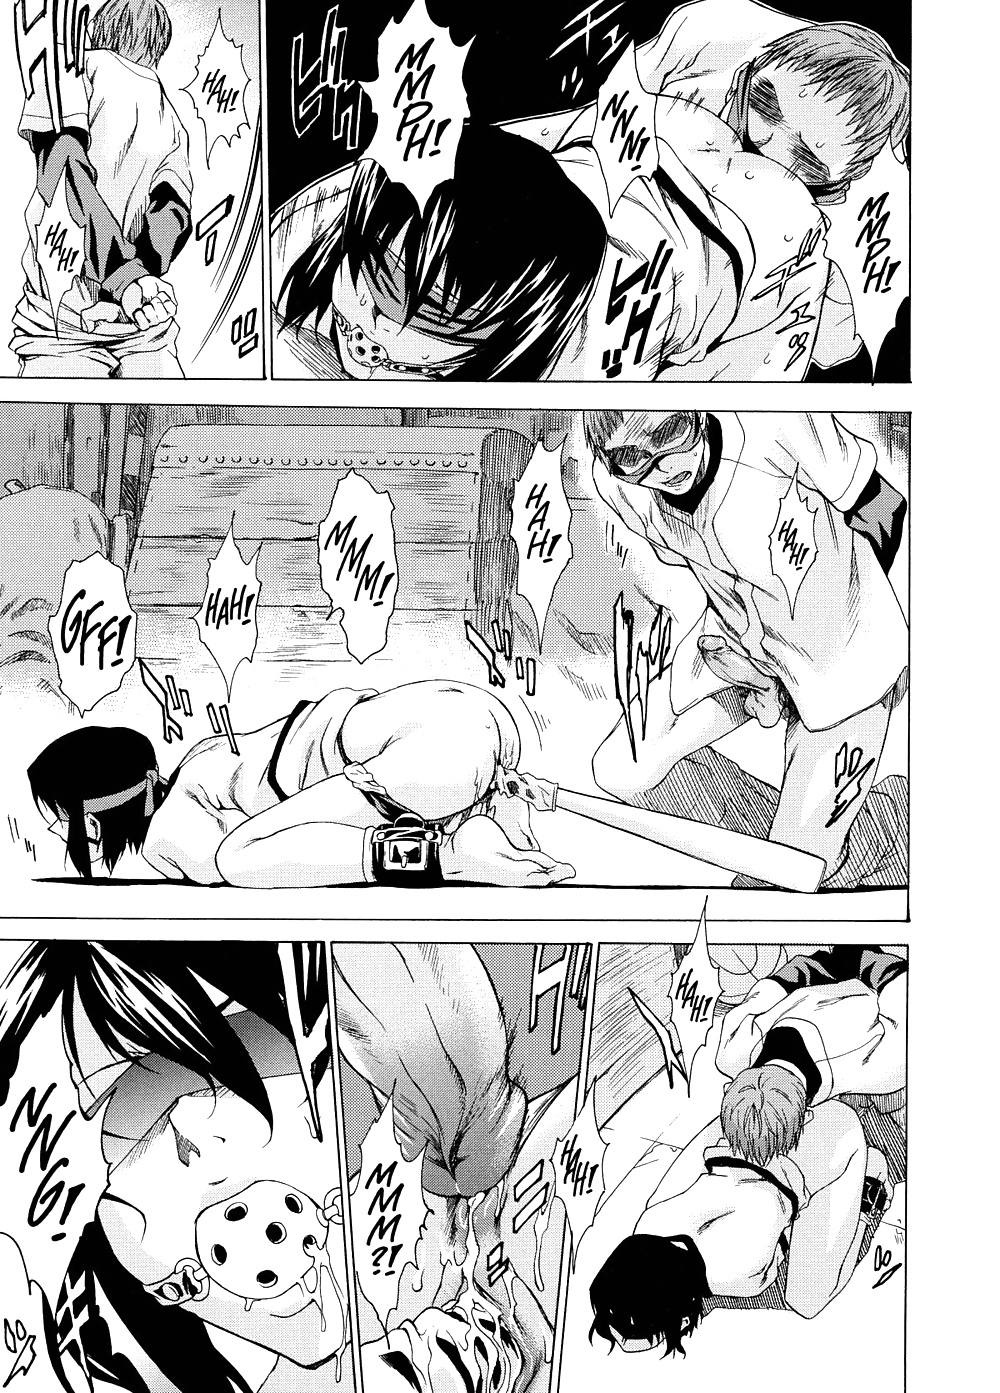 Domin-8 Me   Take On me   Hentai Manga Part 2 (60/98)